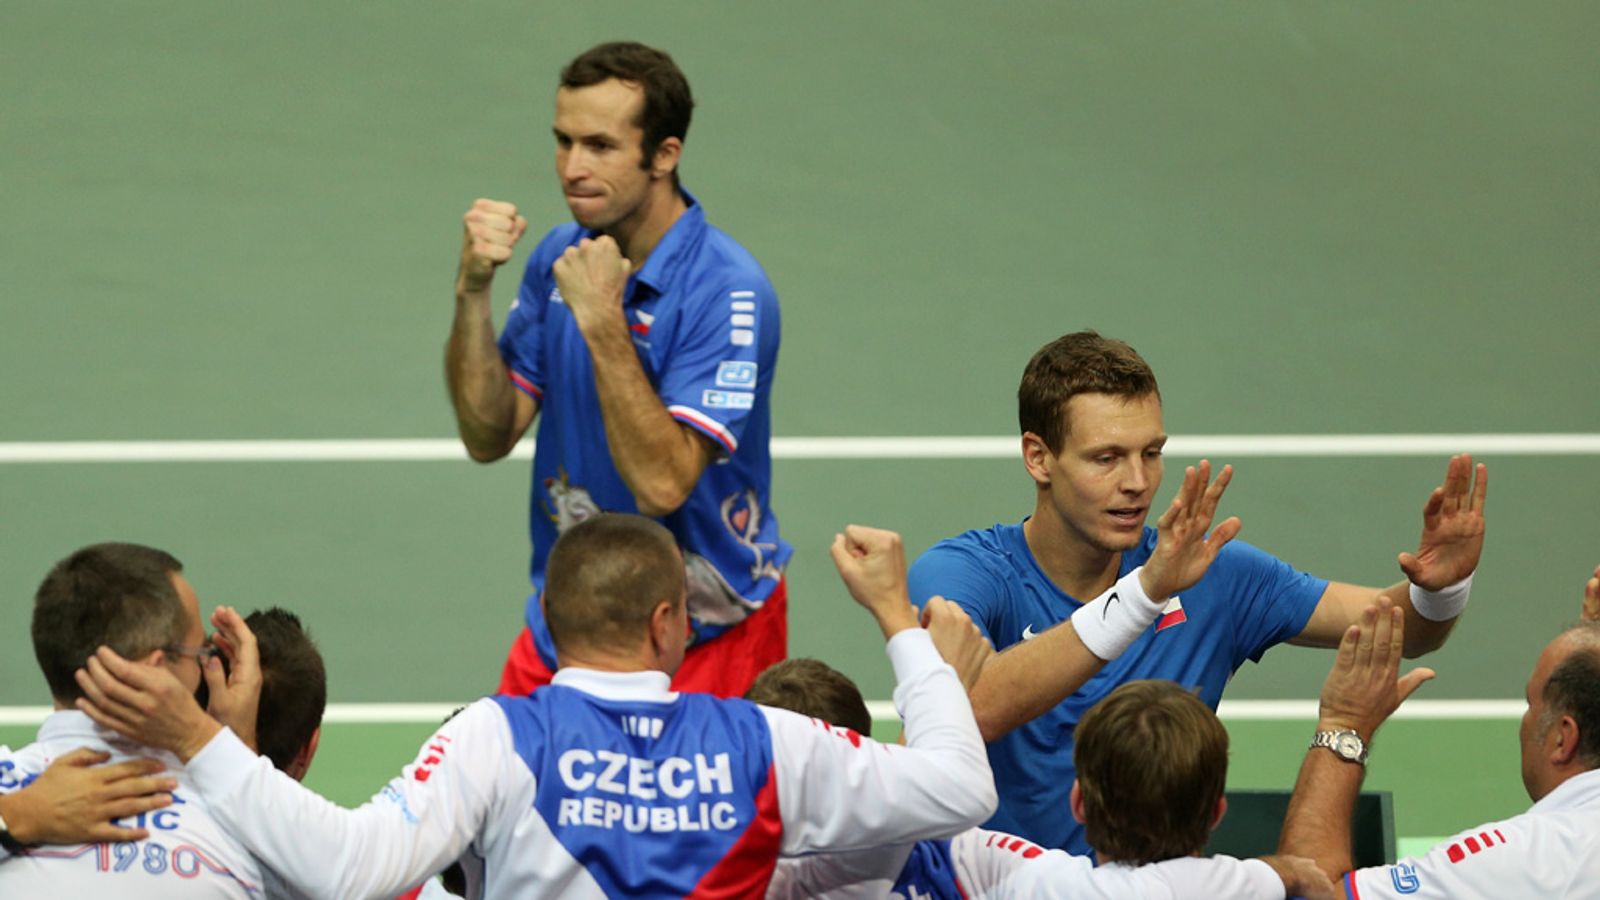 Davis Cup Czech Republic beat Argentina to reach November final